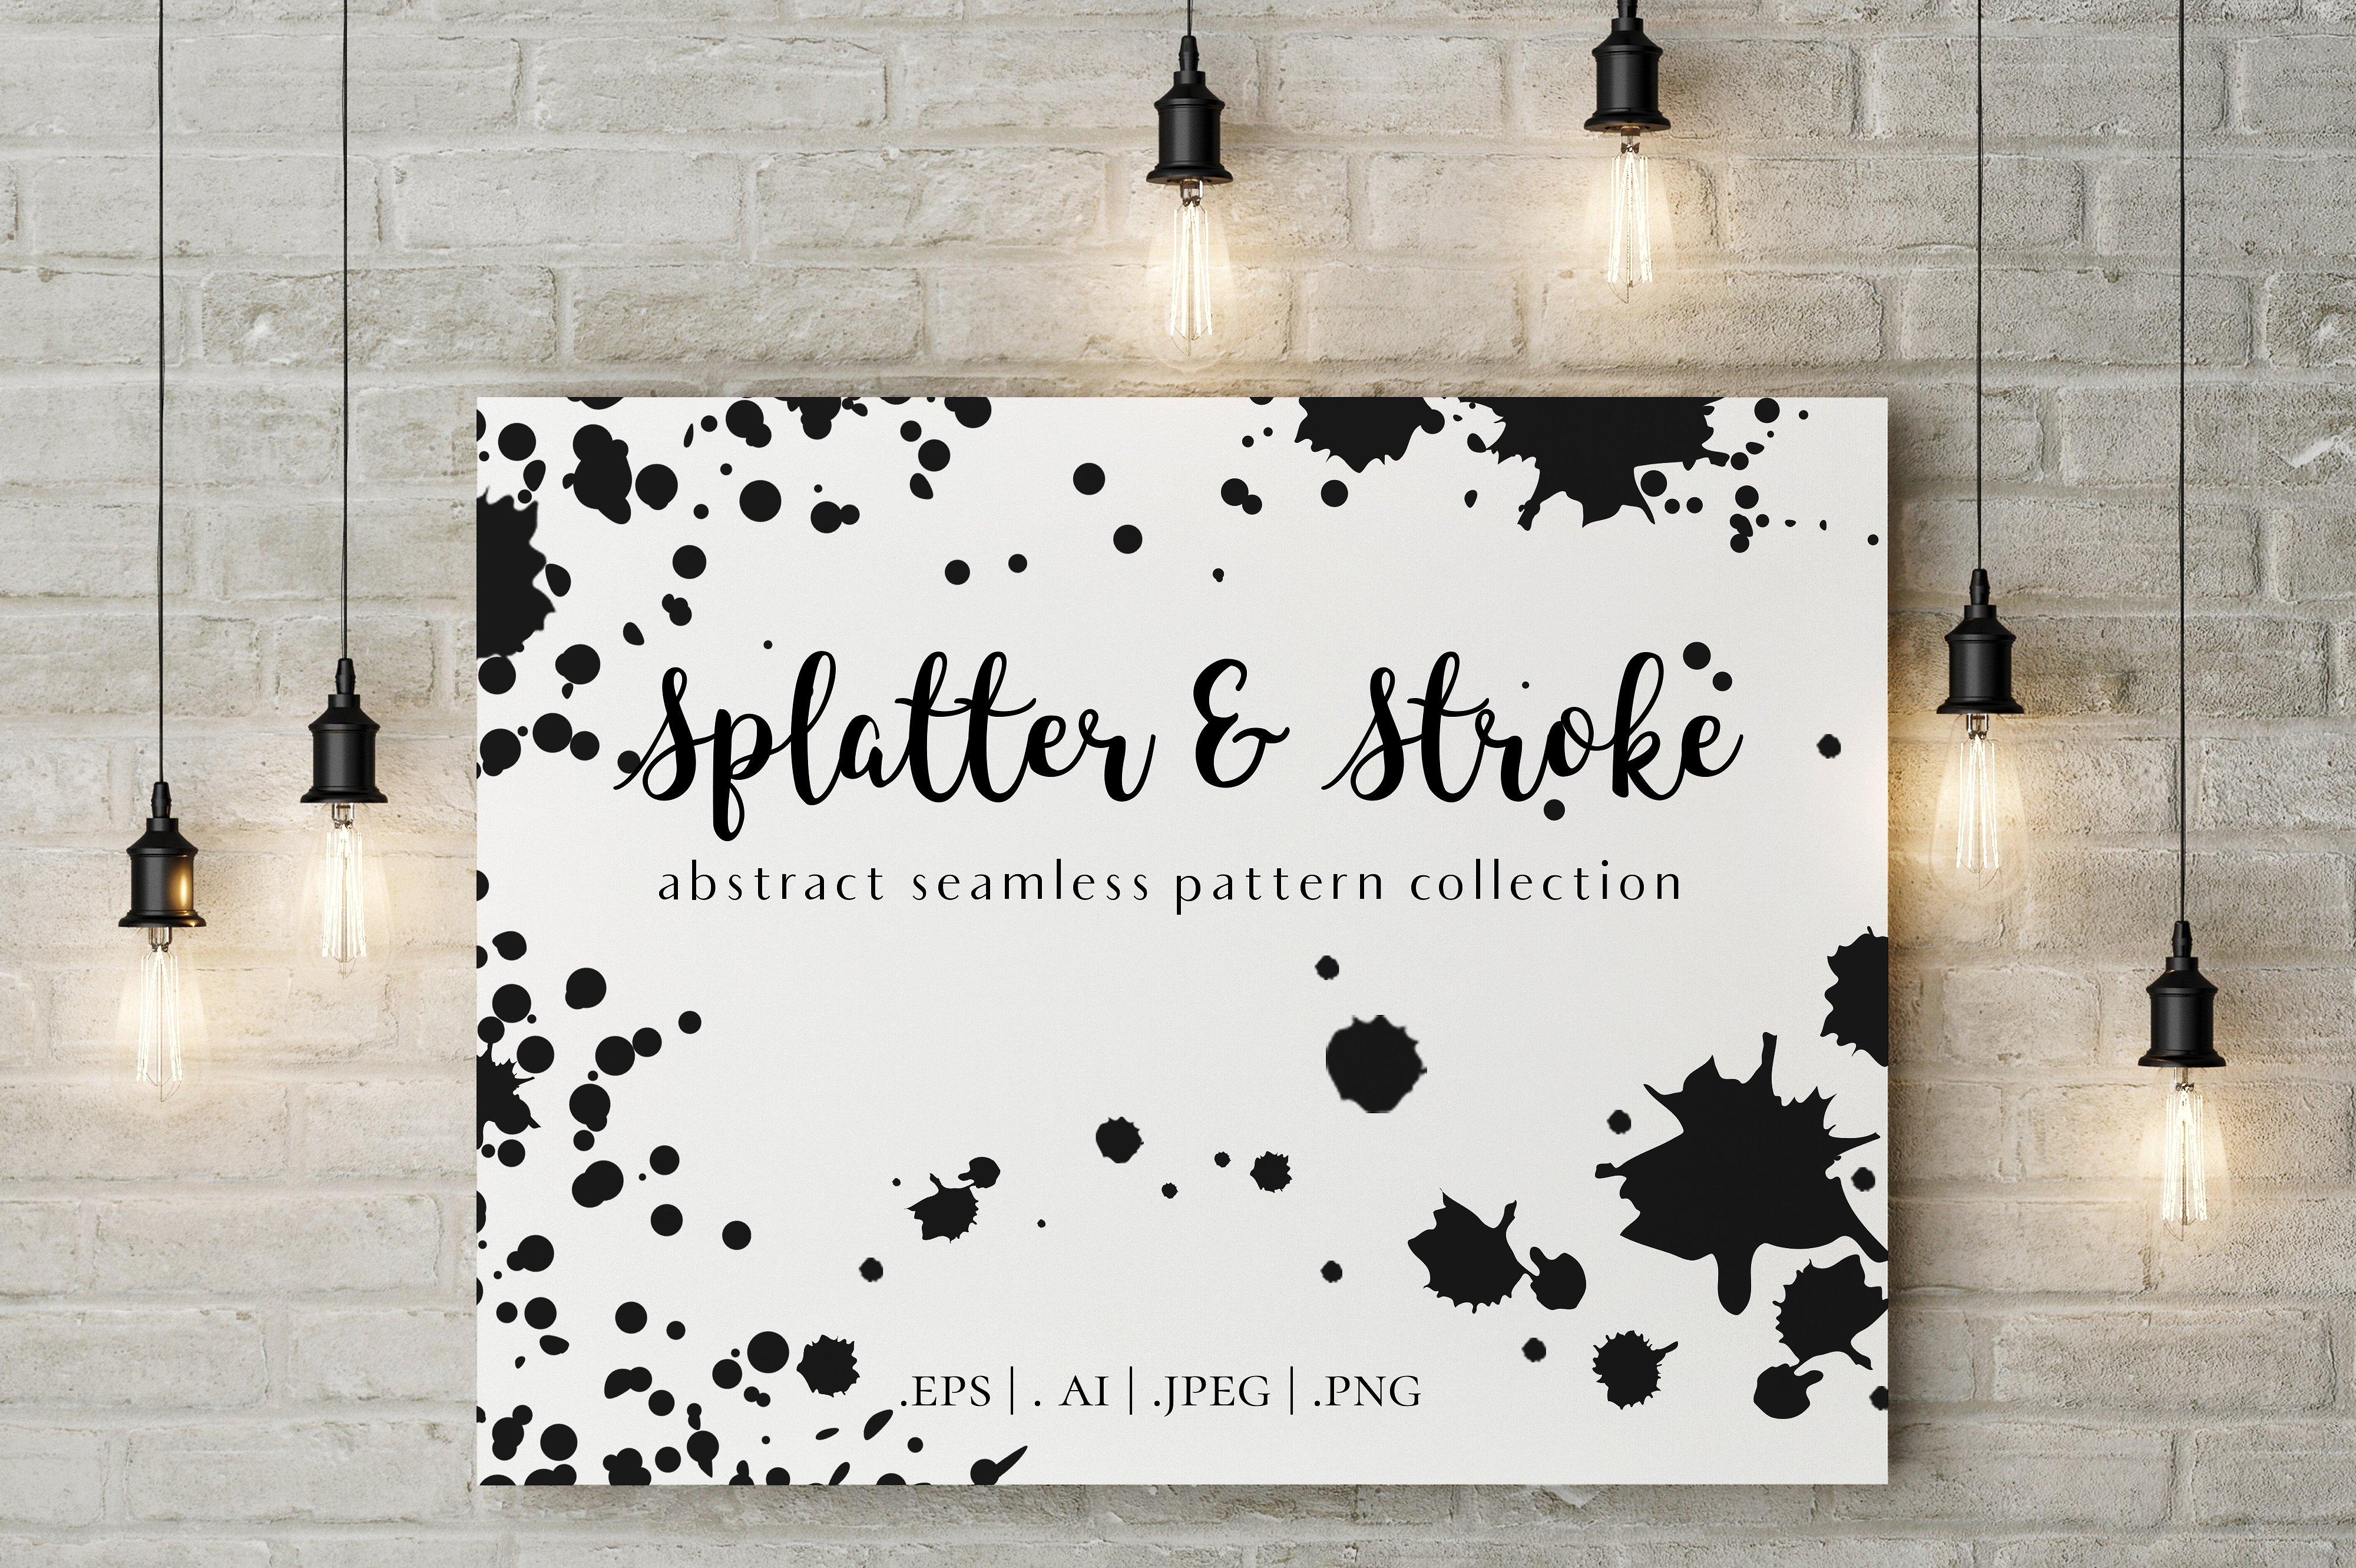 泼墨斑点&毛笔笔迹纹理素材 Paint Splatter & Stroke, 40 Patterns插图(13)